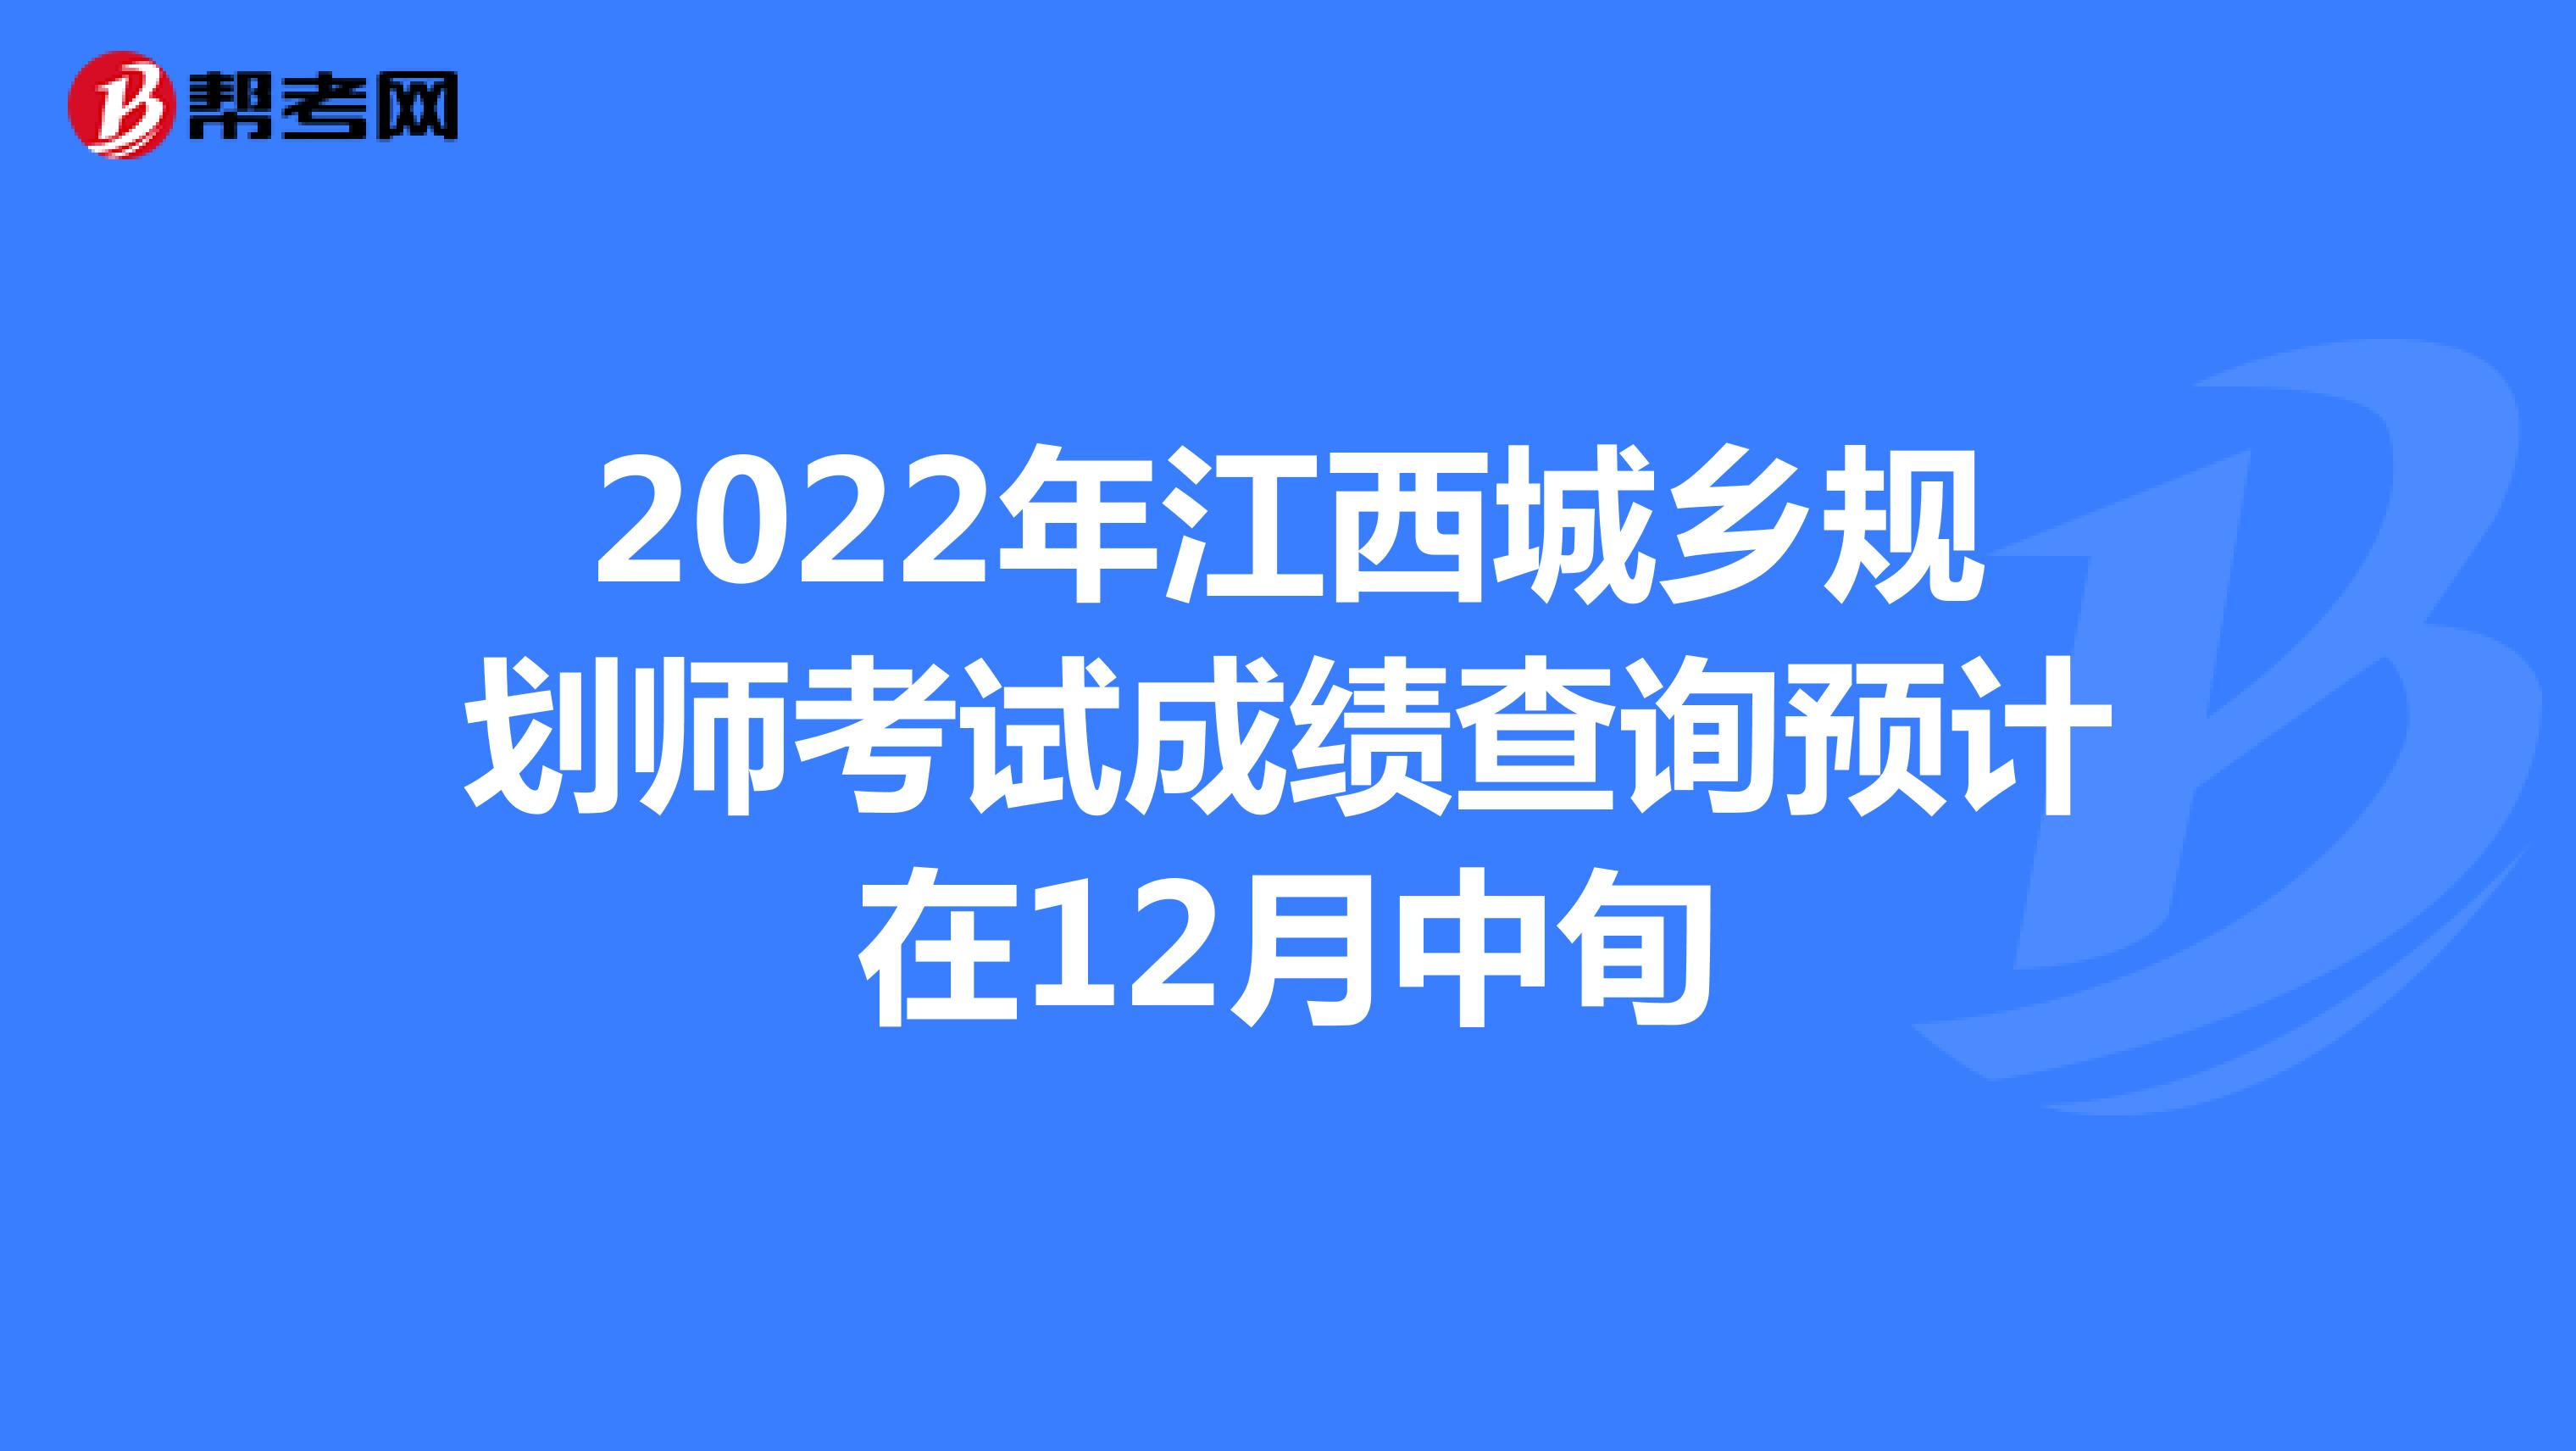 2022年江西城乡规划师考试成绩查询预计在12月中旬